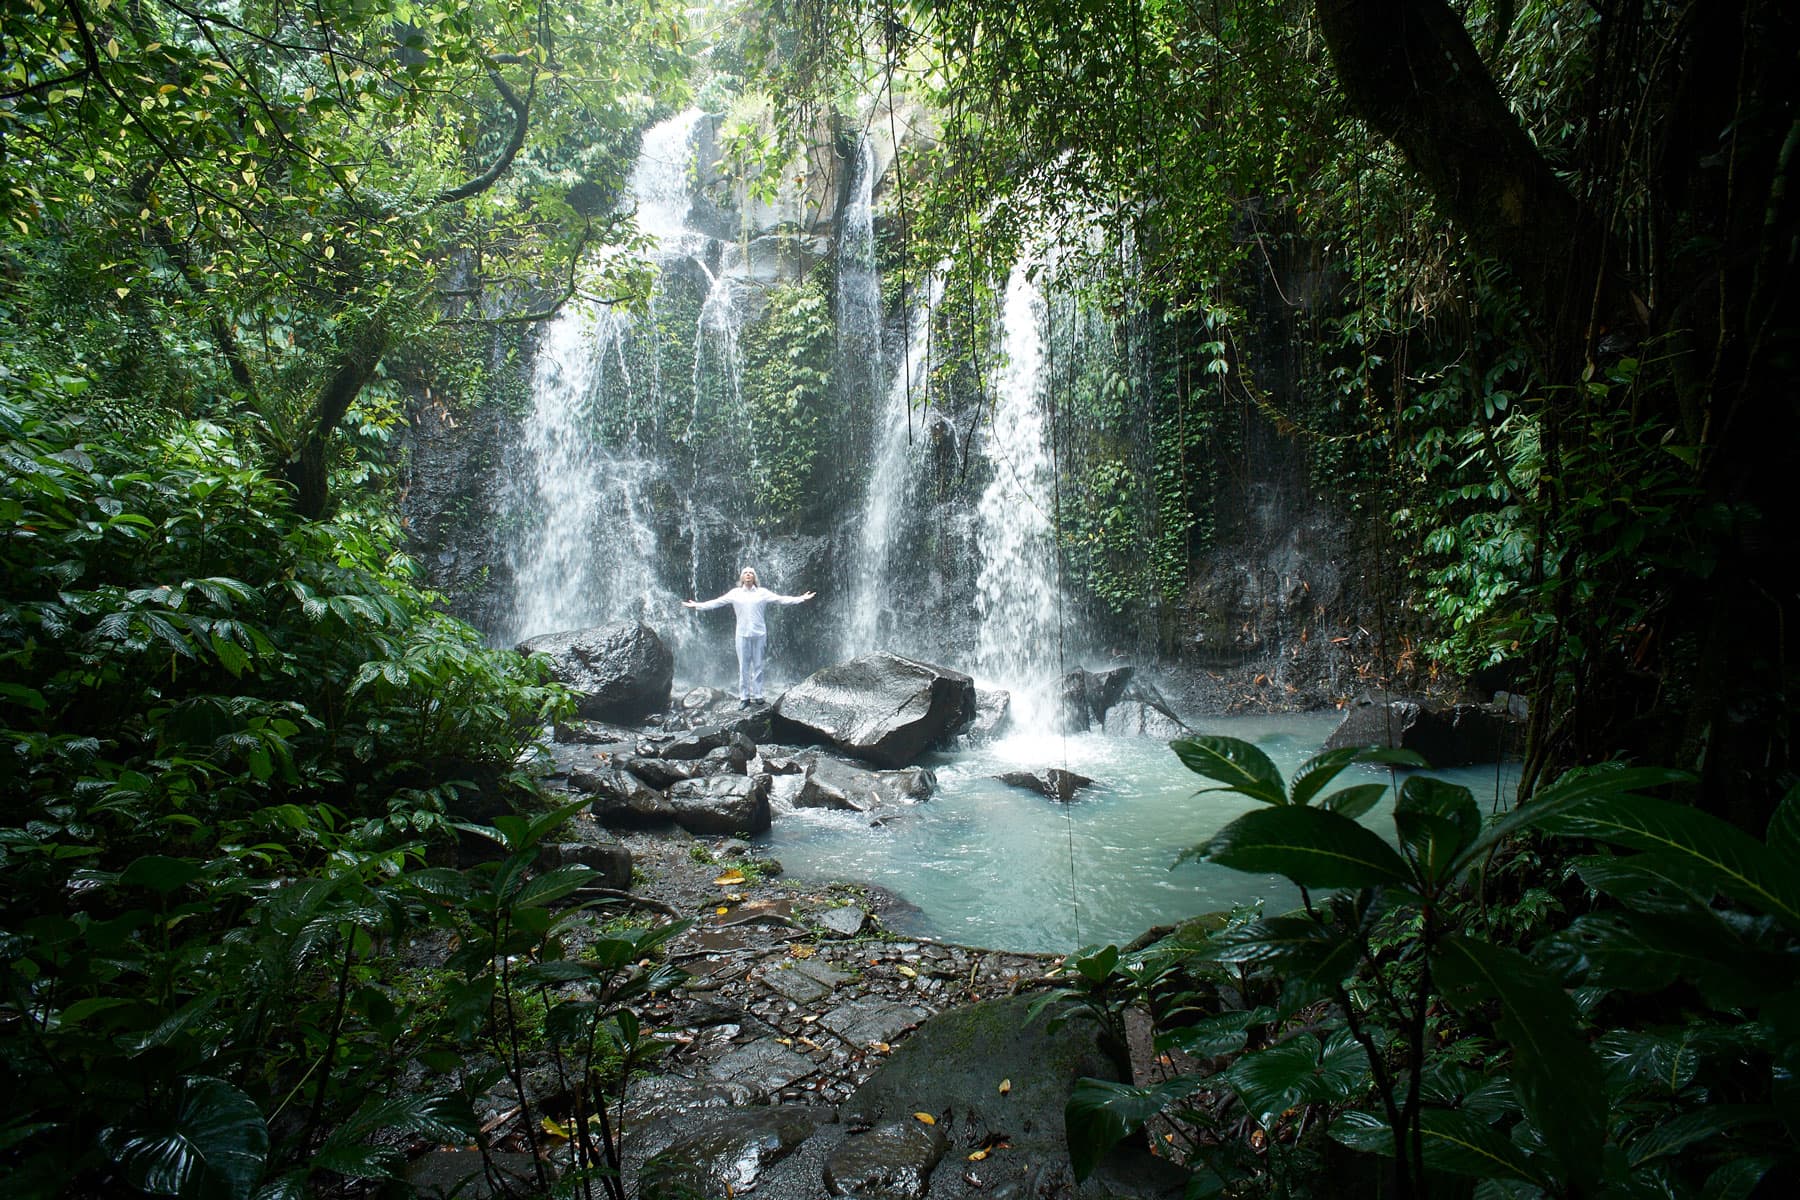 Bild zeigt einen paradiesischen Wasserfall im Dschungel in dem eine Person segnend die Arme ausbreitet